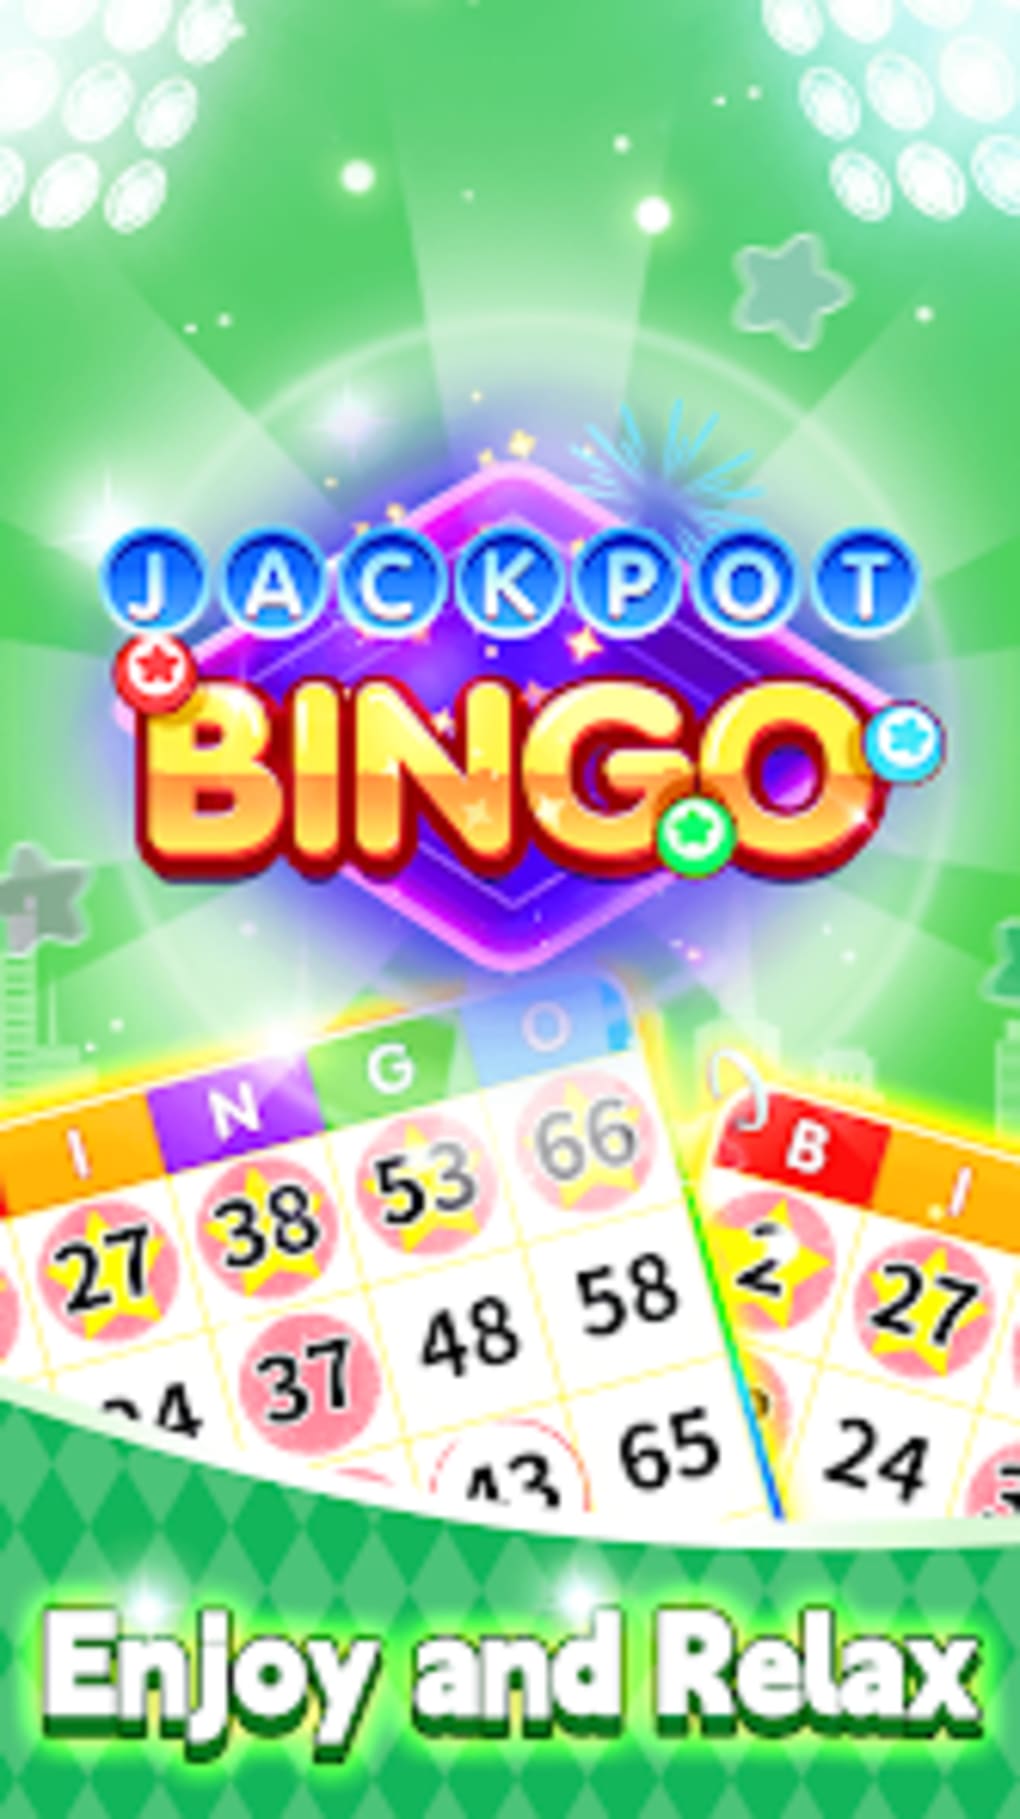 Jackpot de bingo emocionante